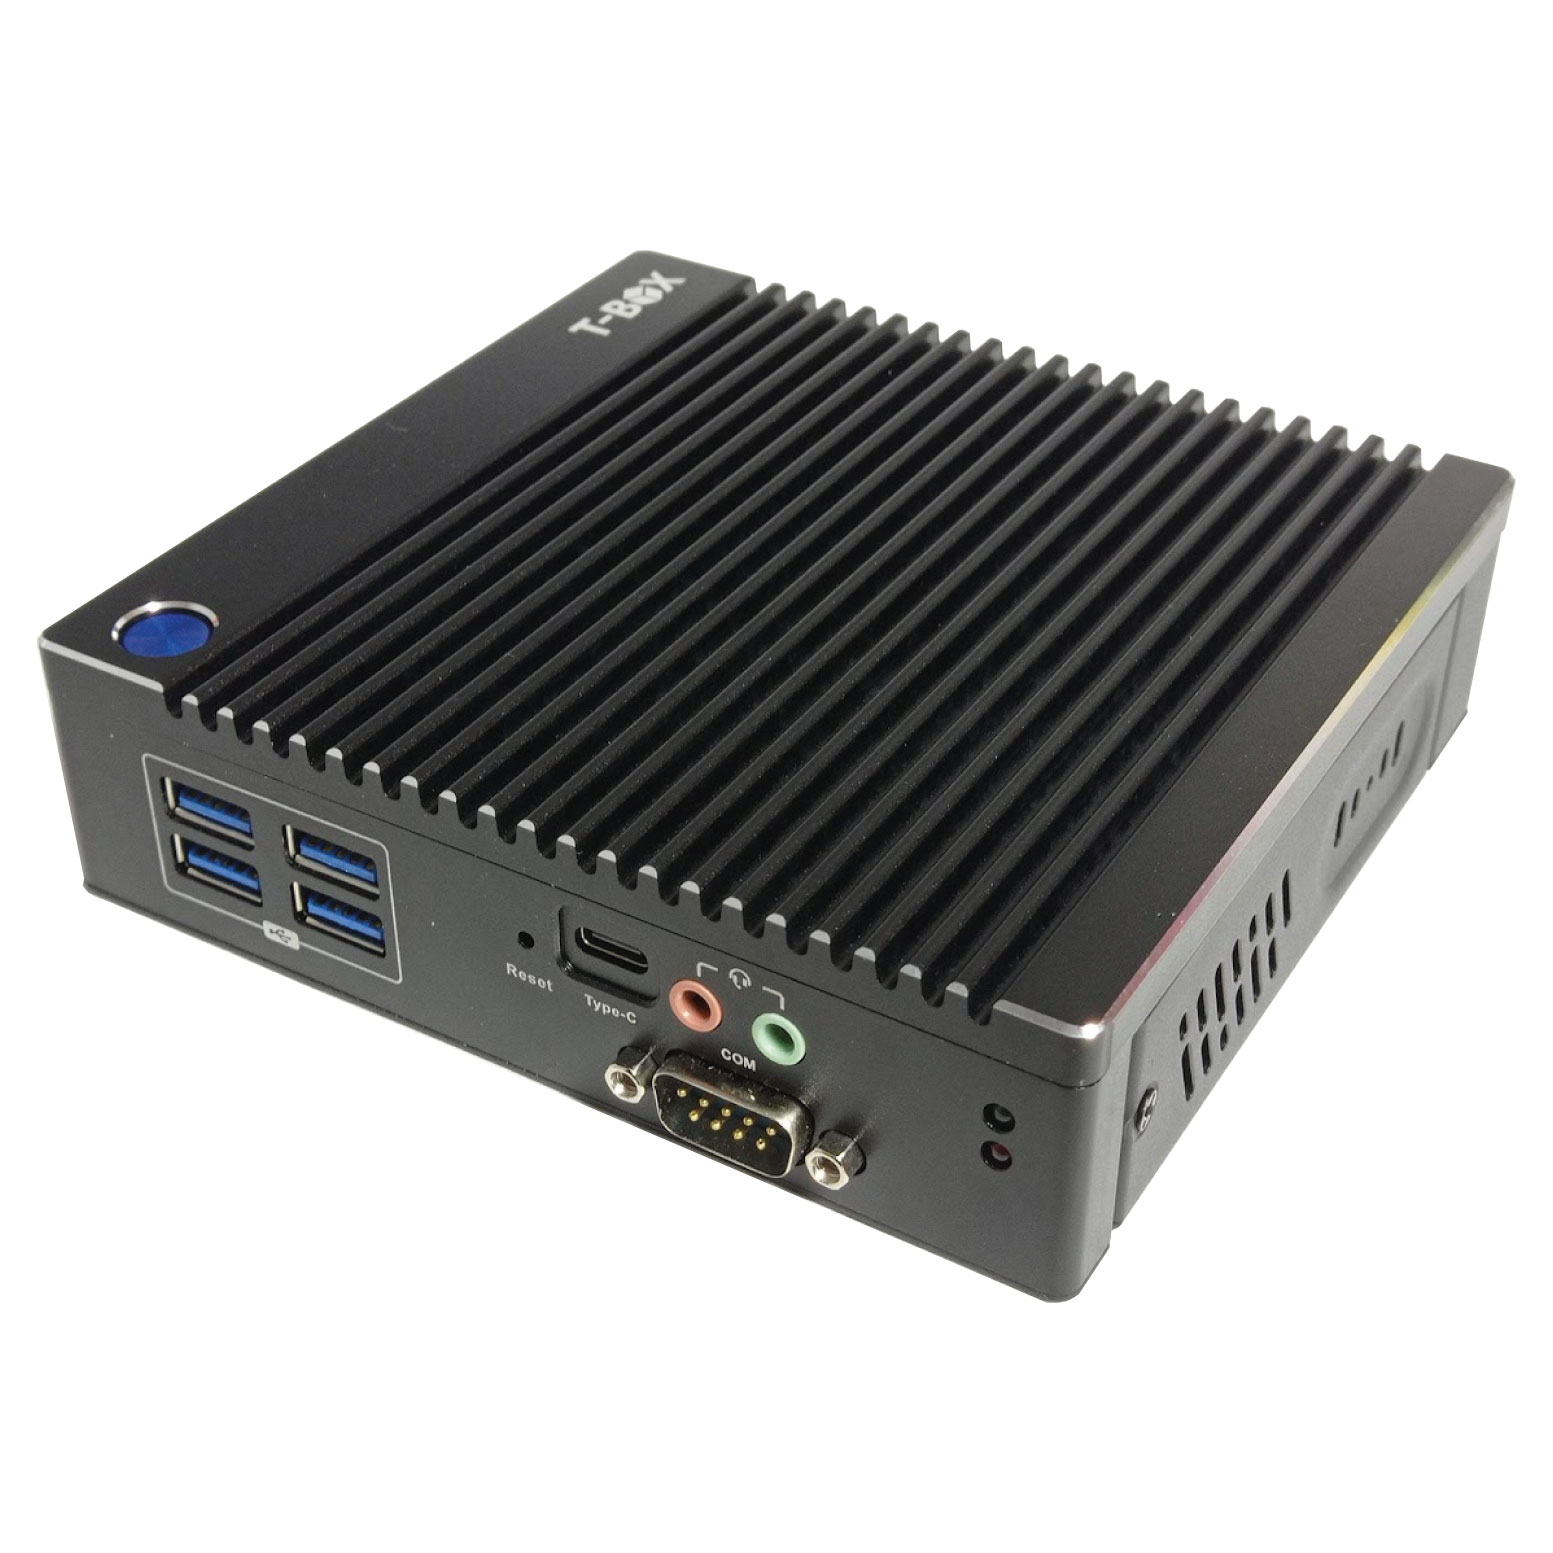 BOX-INDN31 Mini PC Celeron 8GB, SSD 512GB, No Wifi, Win 10Pro, 2LAN, 6USB, 1TypeC, 2HDMI, 1VGA